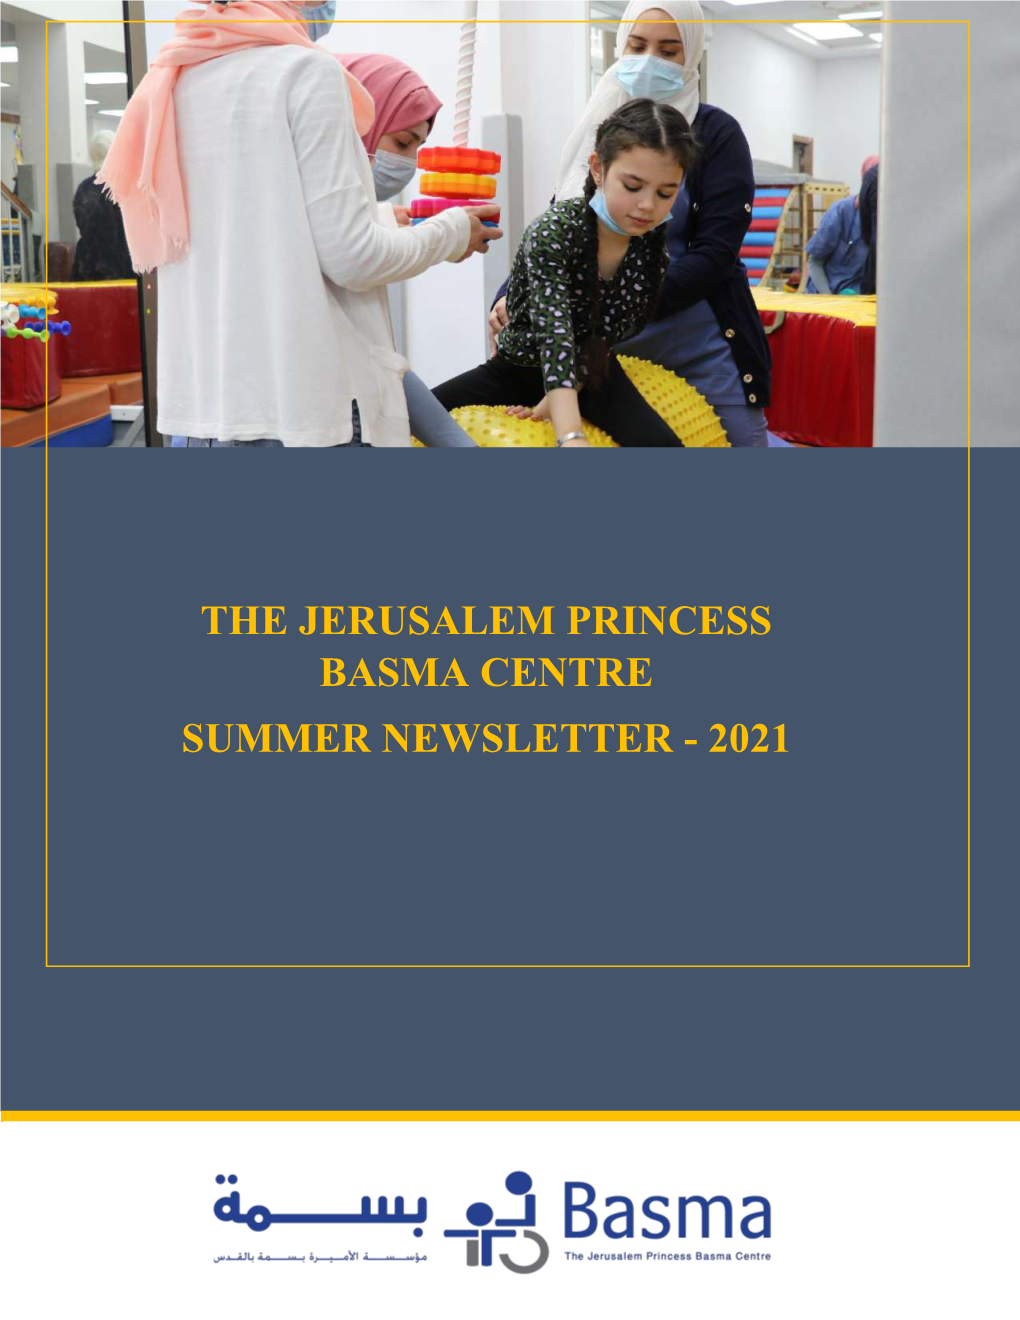 The Jerusalem Princess Basma Centre Summer Newsletter - 2021